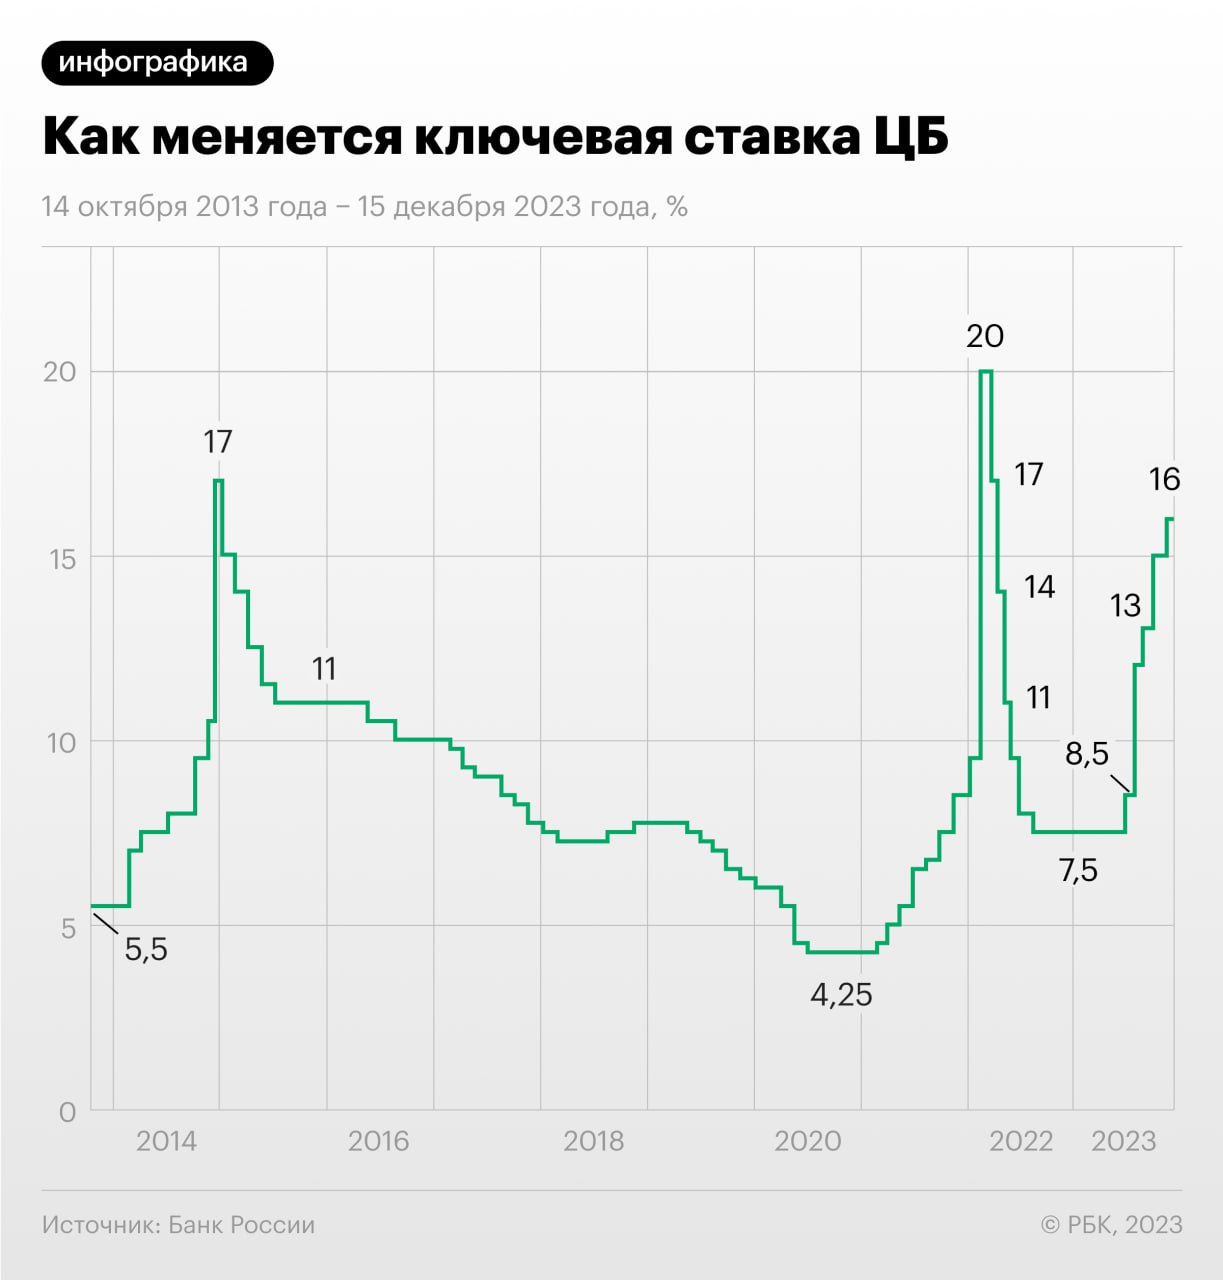 Изменение ключевой ставки Центробанка России 14 октября 2013 года — 15 декабря 2023 года